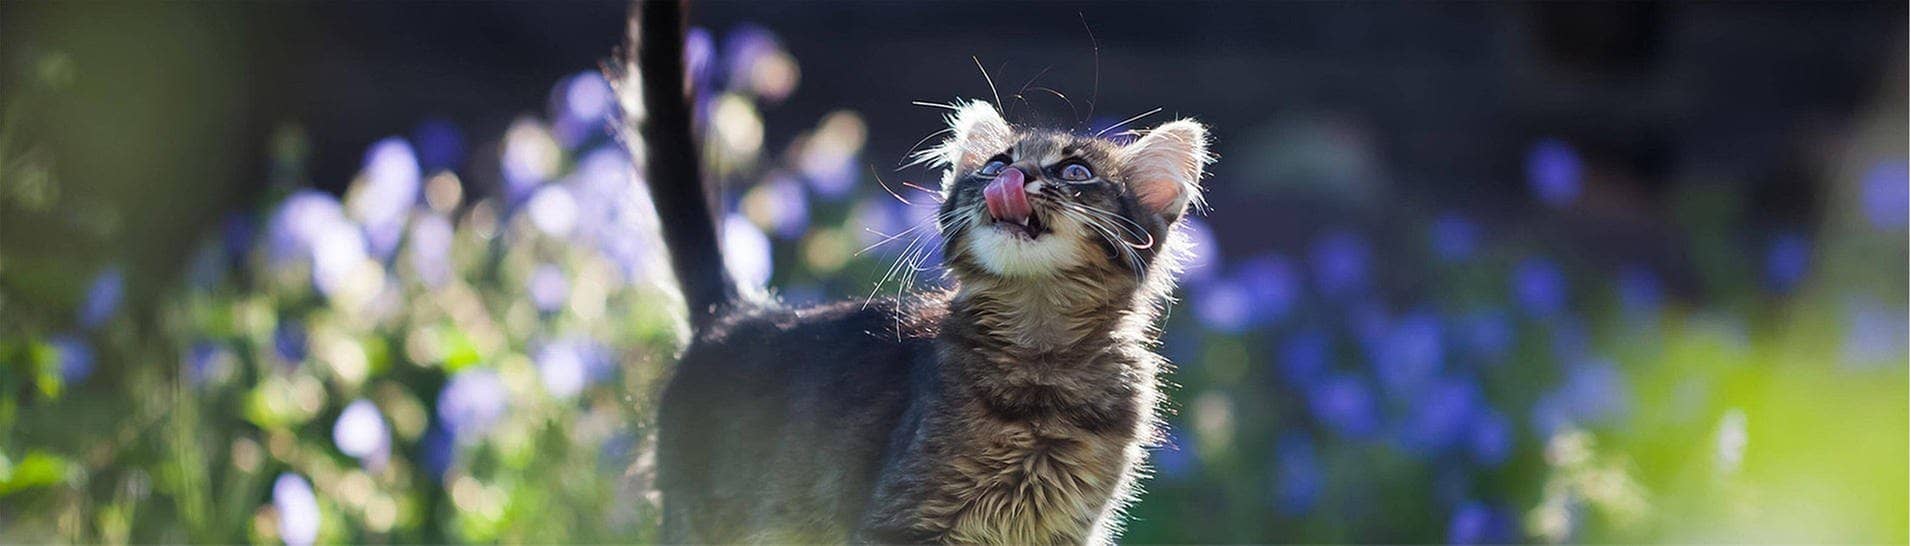 Katze im Garten schaut in die Luft